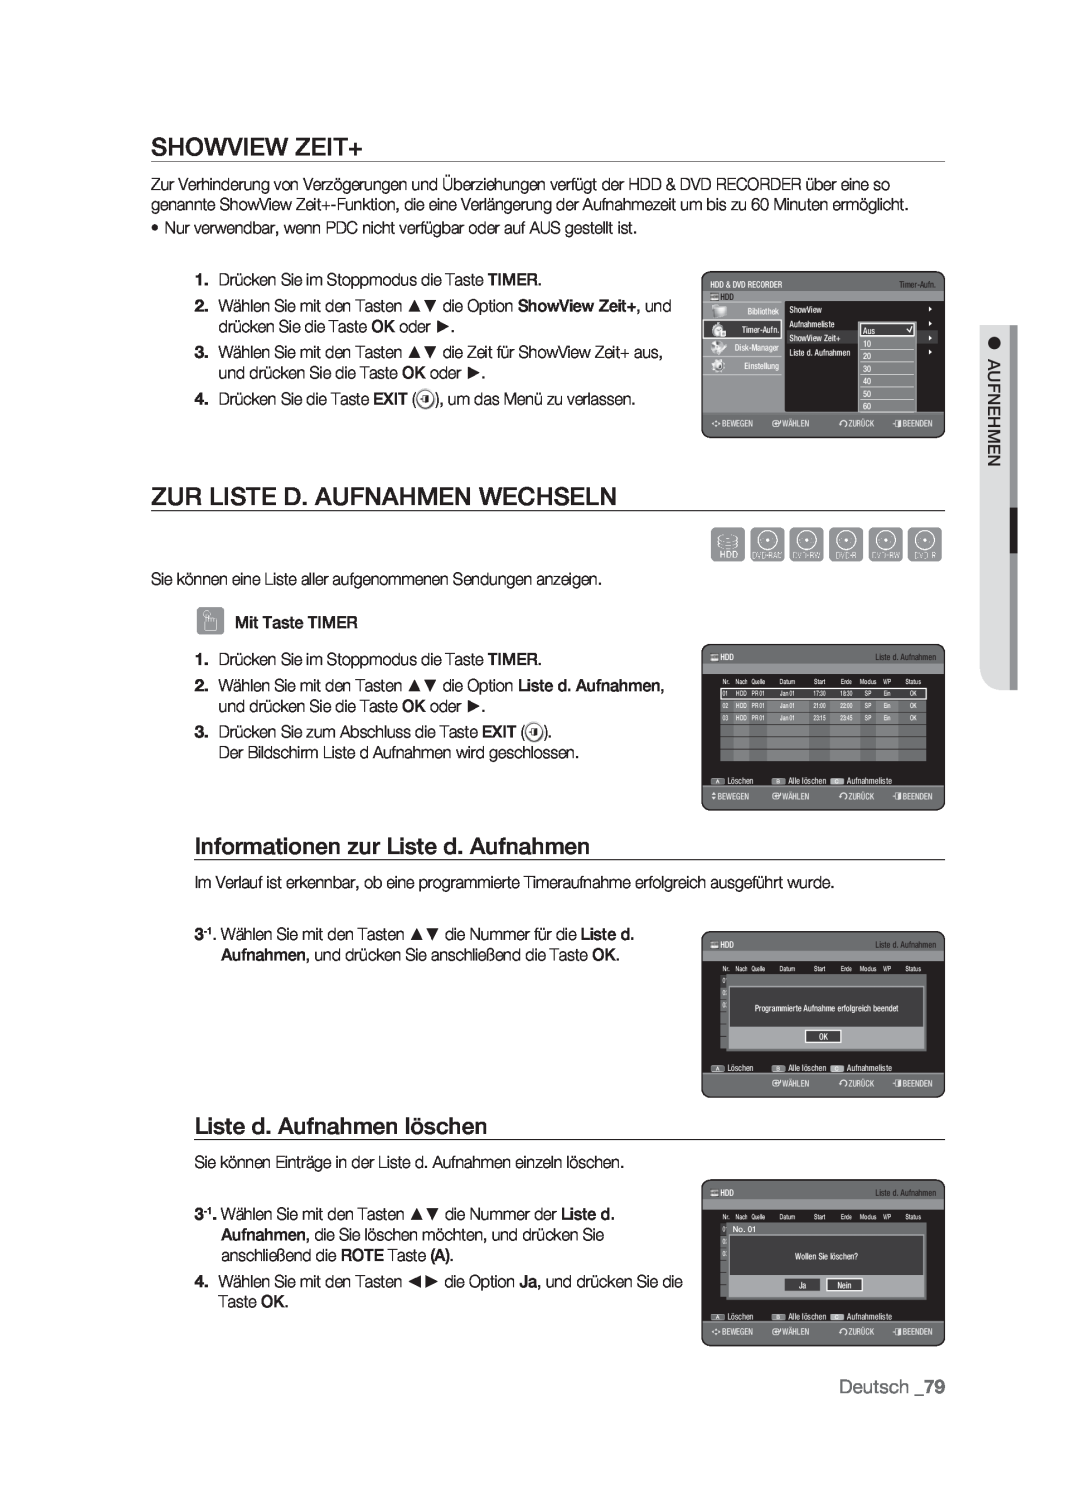 Samsung DVD-HR773/AUS manual Showview Zeit+, Zur Liste D. Aufnahmen Wechseln, Informationen zur Liste d. Aufnahmen, Sxcvkl 